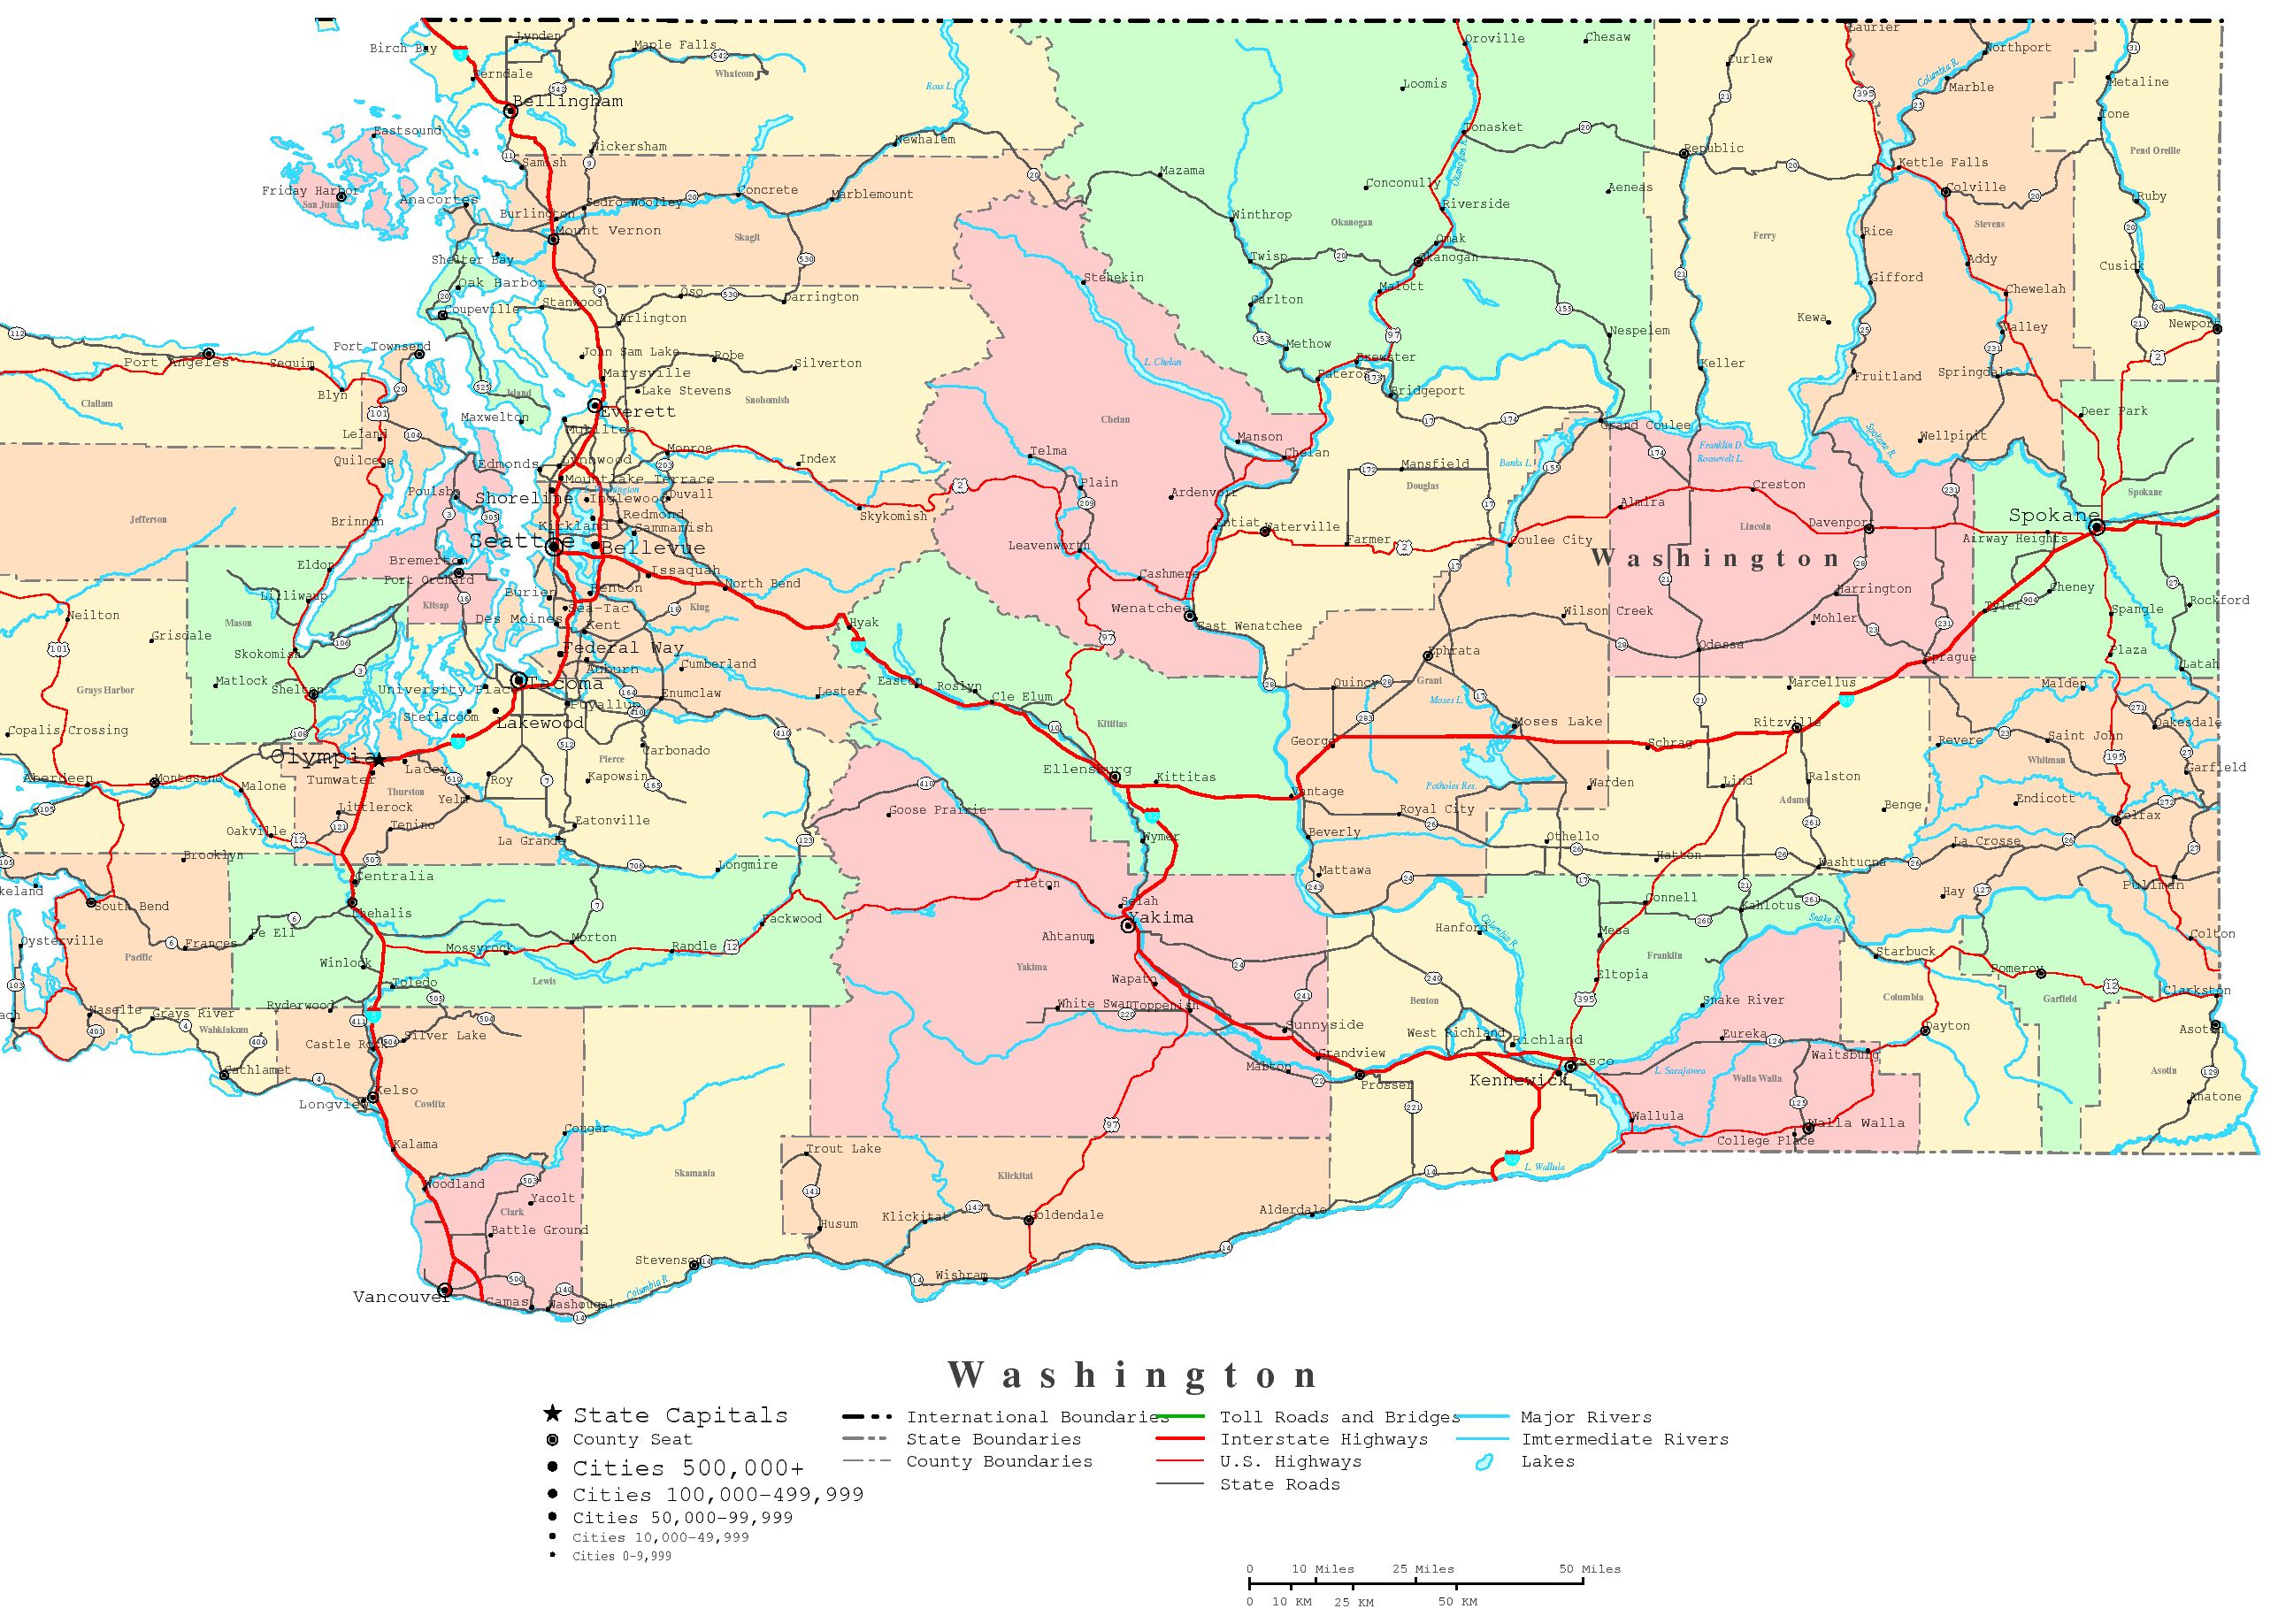 Washington Map - Online Maps Of Washington State - Free Printable Map Of Washington State